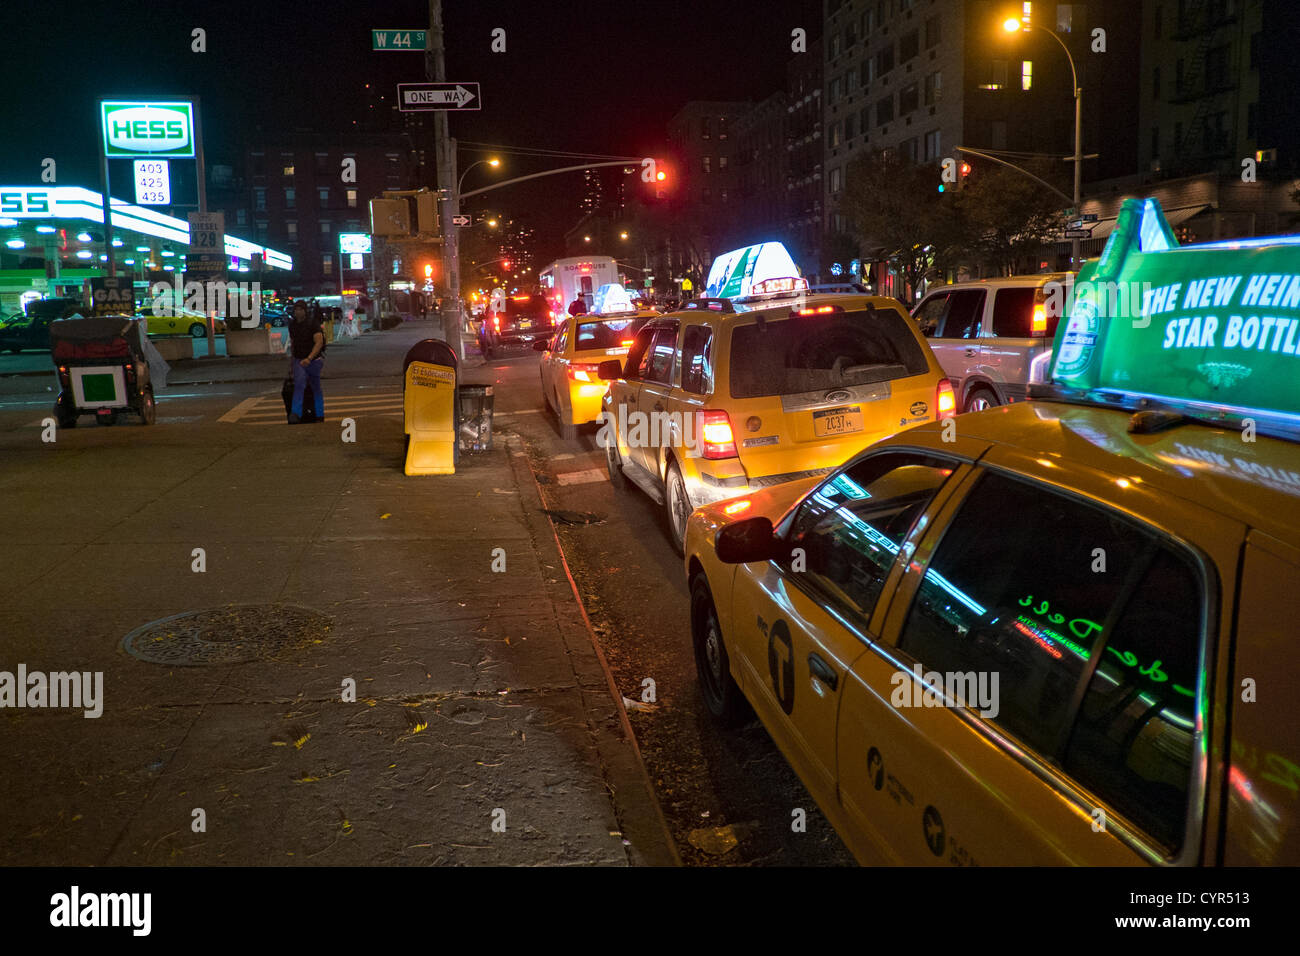 November 8, 2012, New York, NY, USA. Ore prima il razionamento del gas è quello di iniziare a New York City, conducenti di taxi in fila per riempire i loro serbatoi a Hess stazione di benzina in Hell's Kitchen. Foto Stock